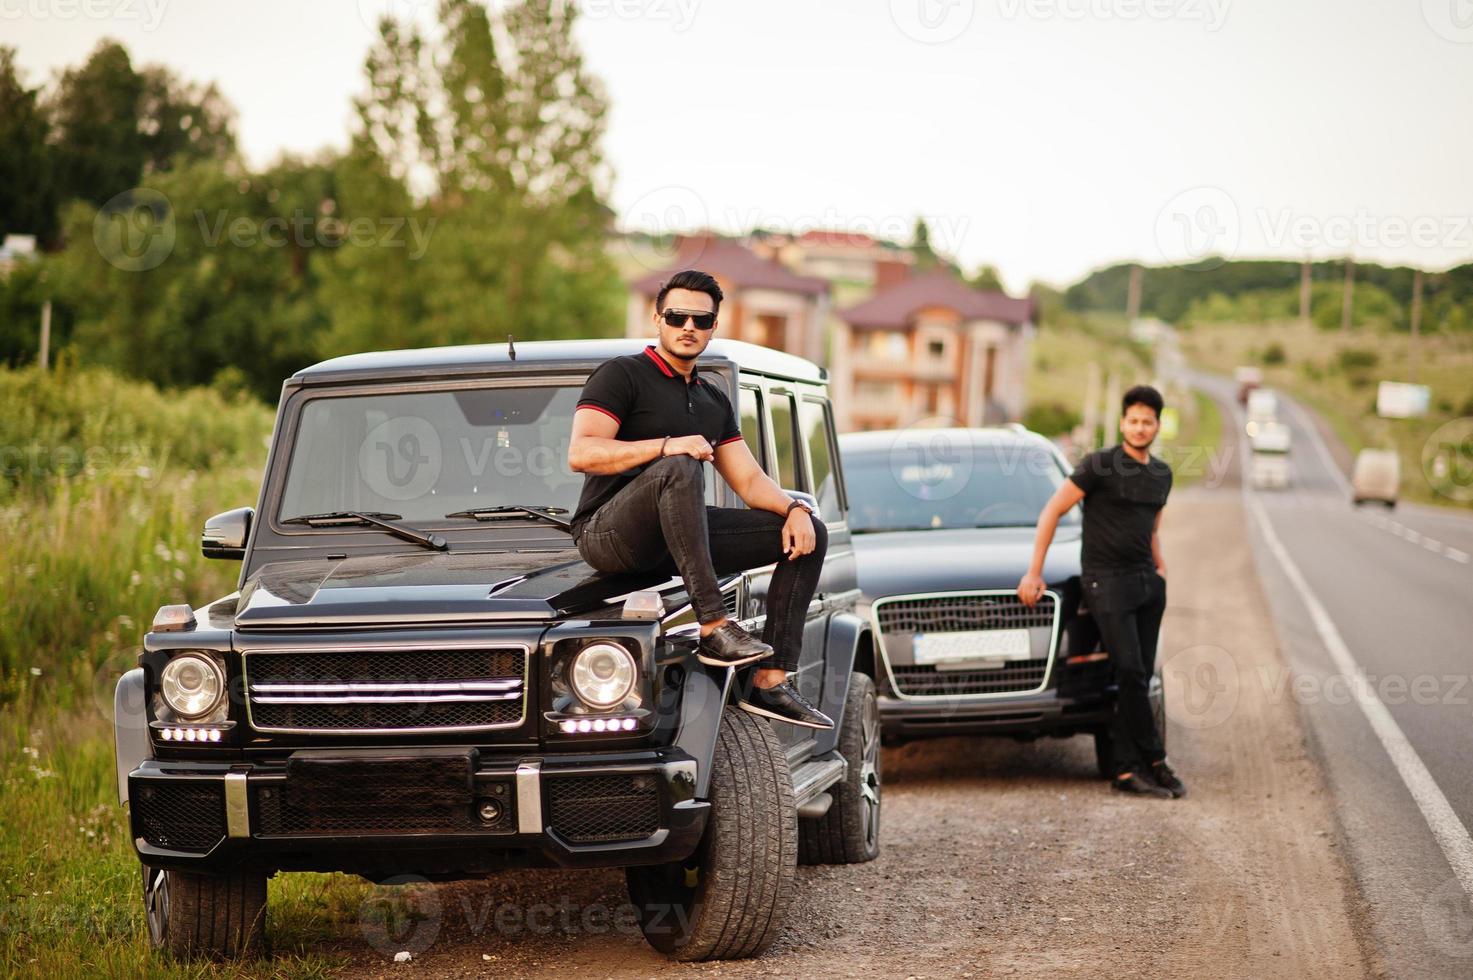 dois irmãos asiáticos vestem todo preto posando perto de carros suv. foto